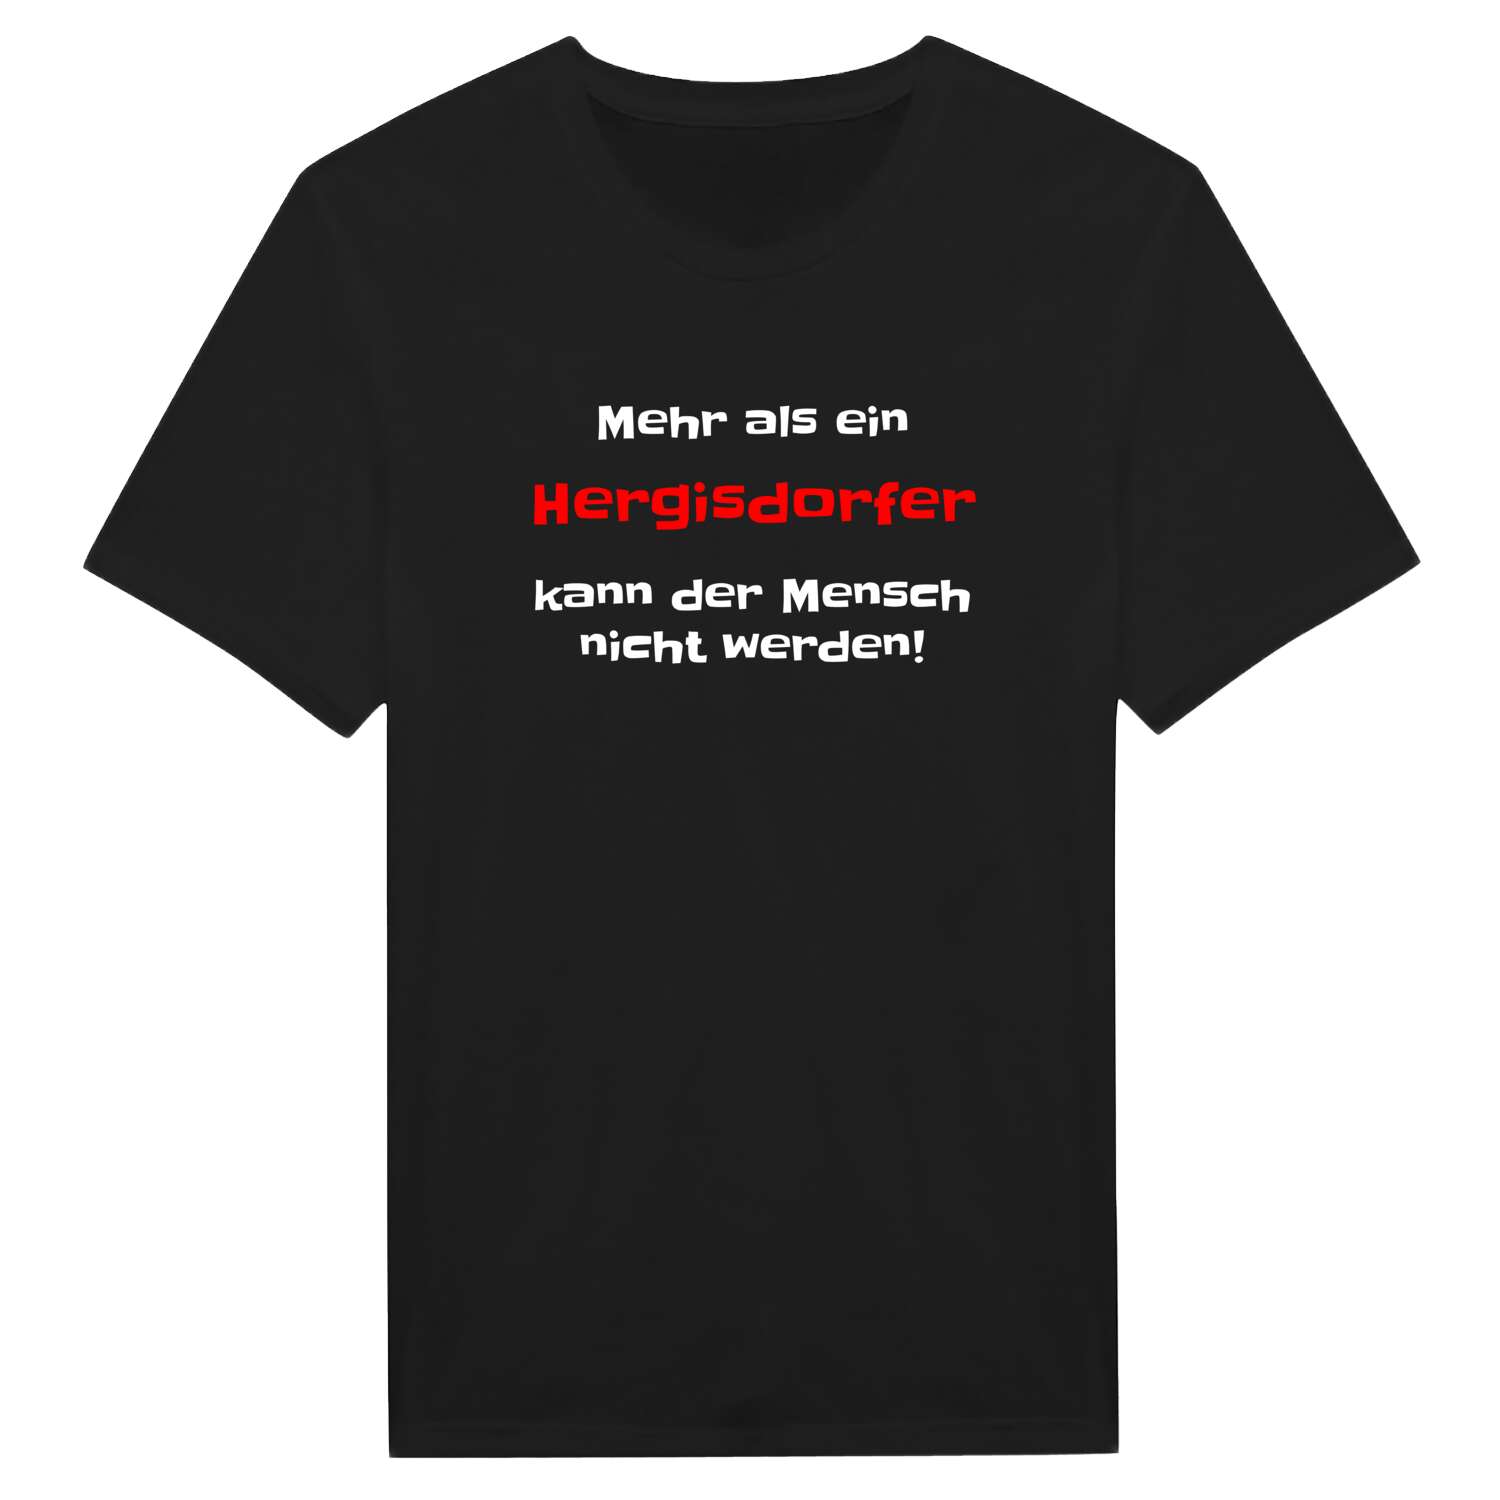 Hergisdorf T-Shirt »Mehr als ein«